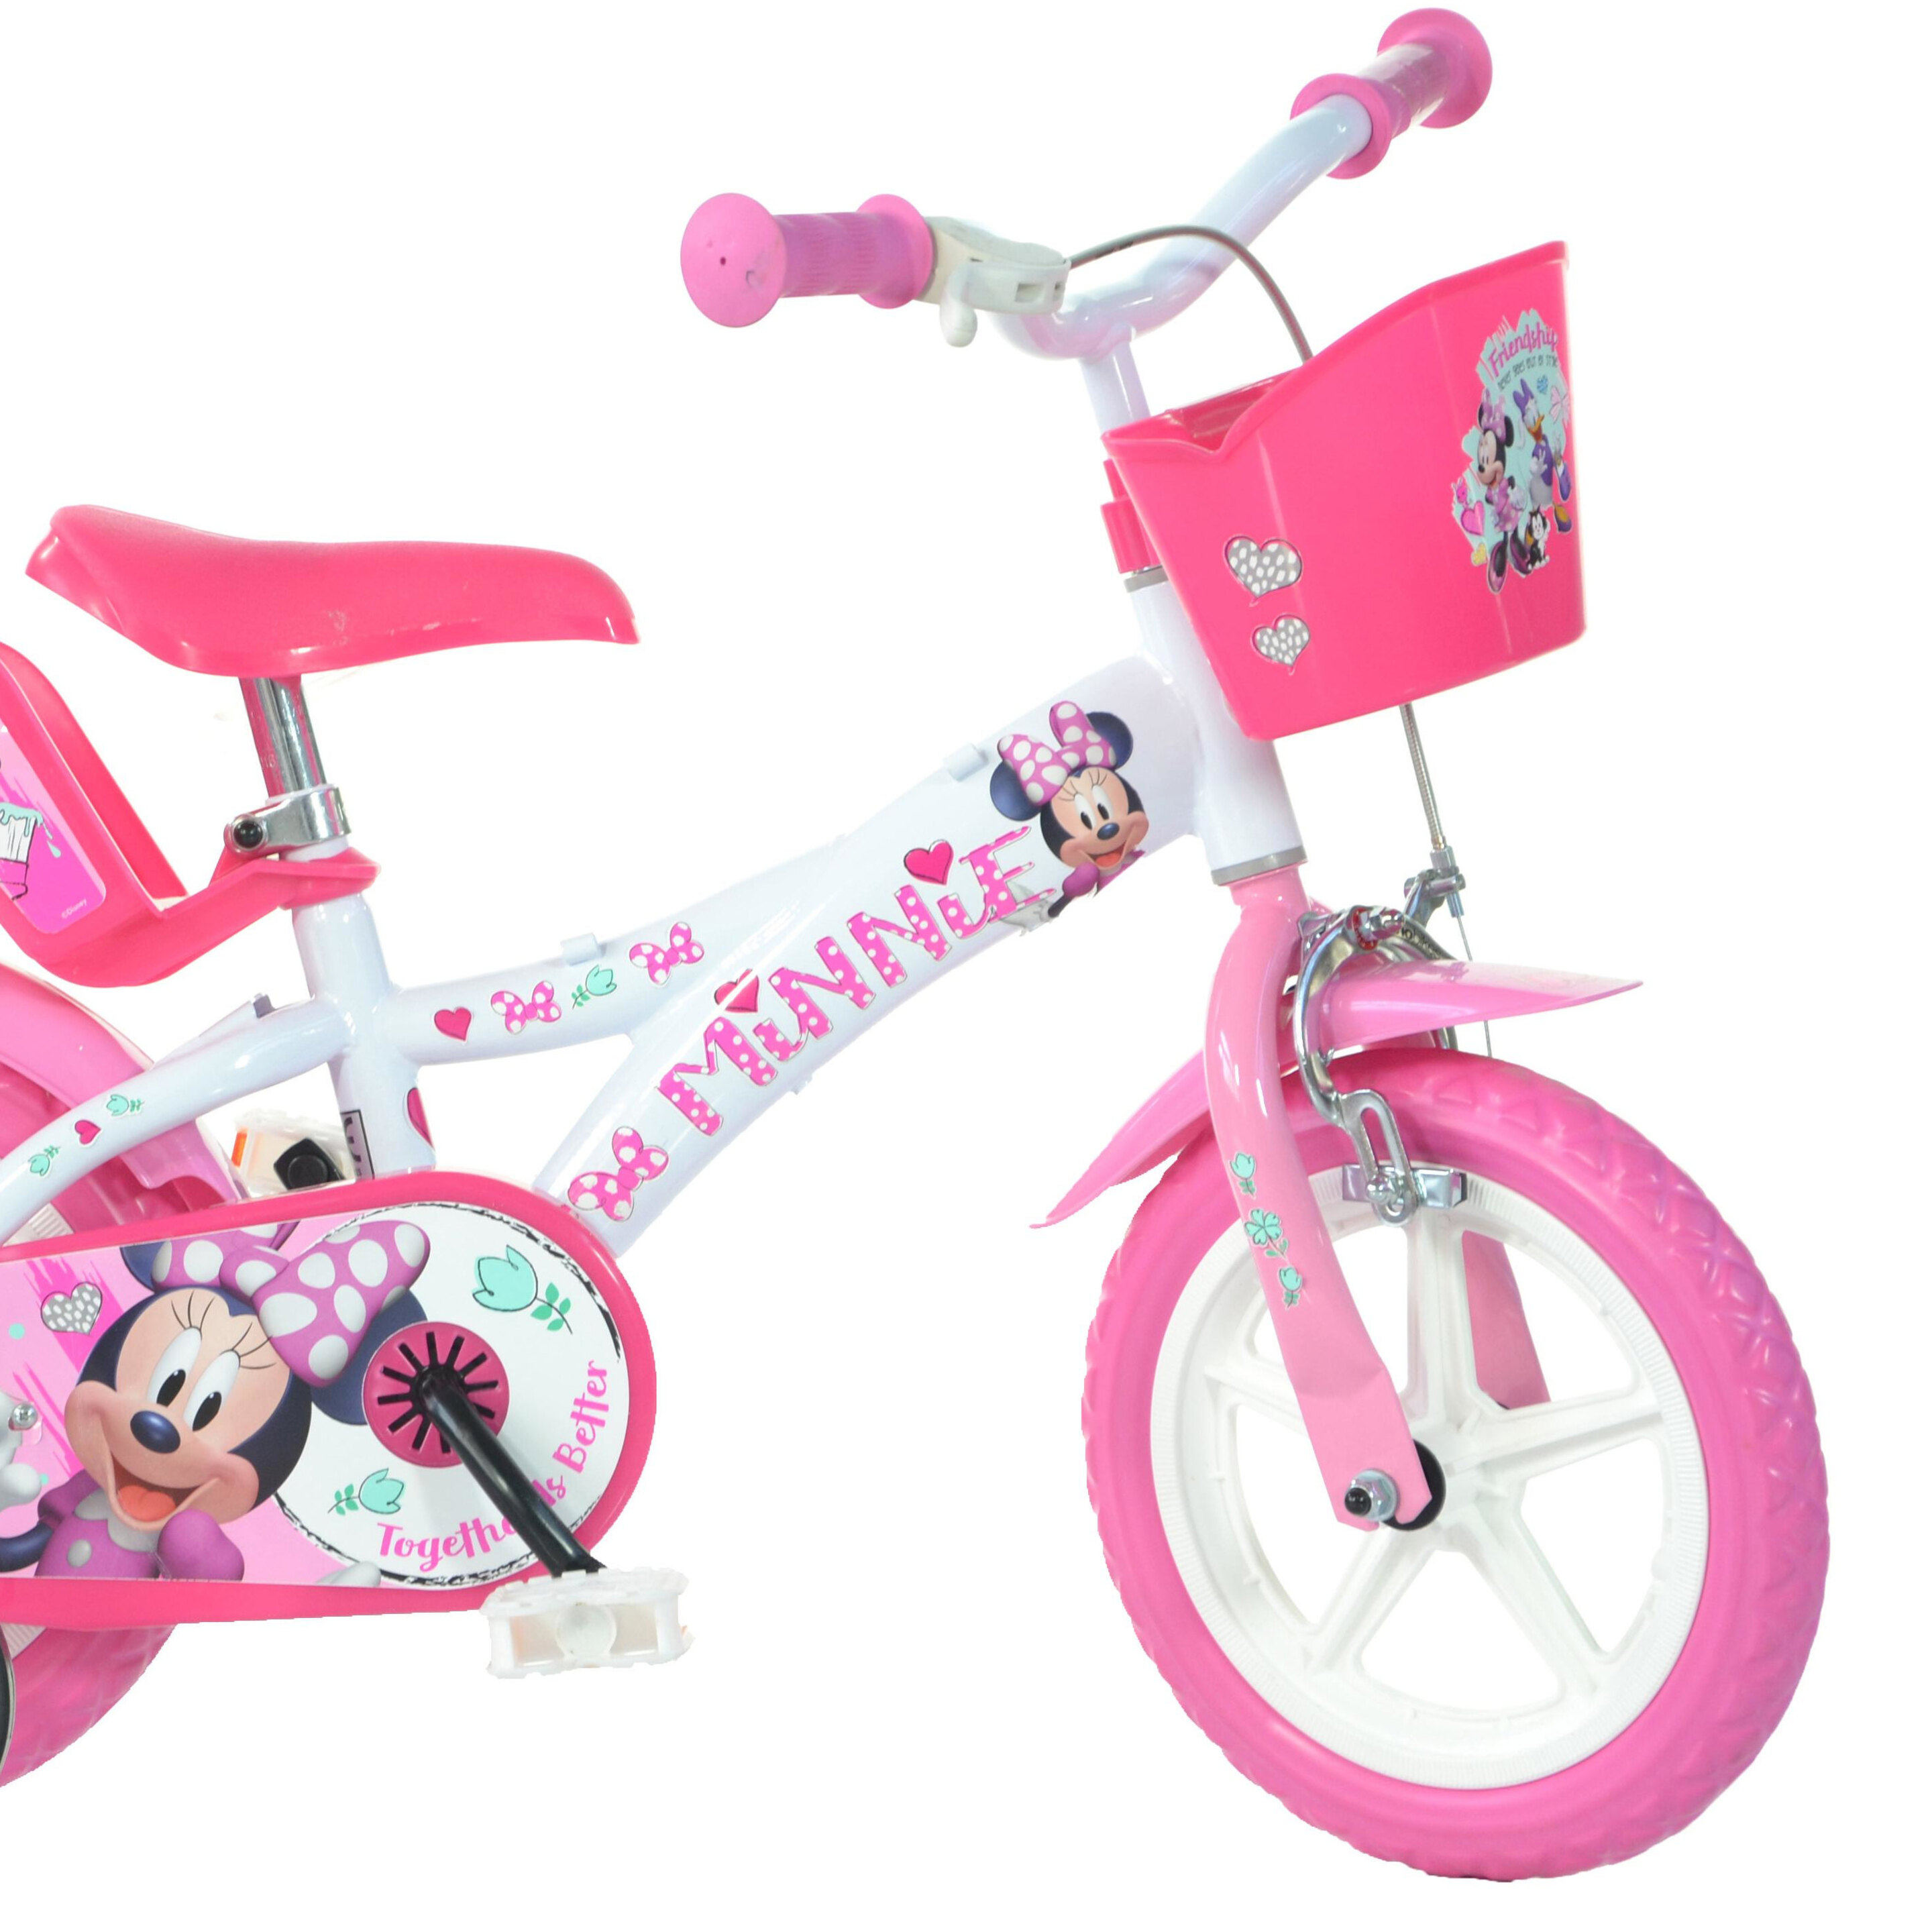 Bicicleta Infantil Minnie Mouse 12 Pulgadas